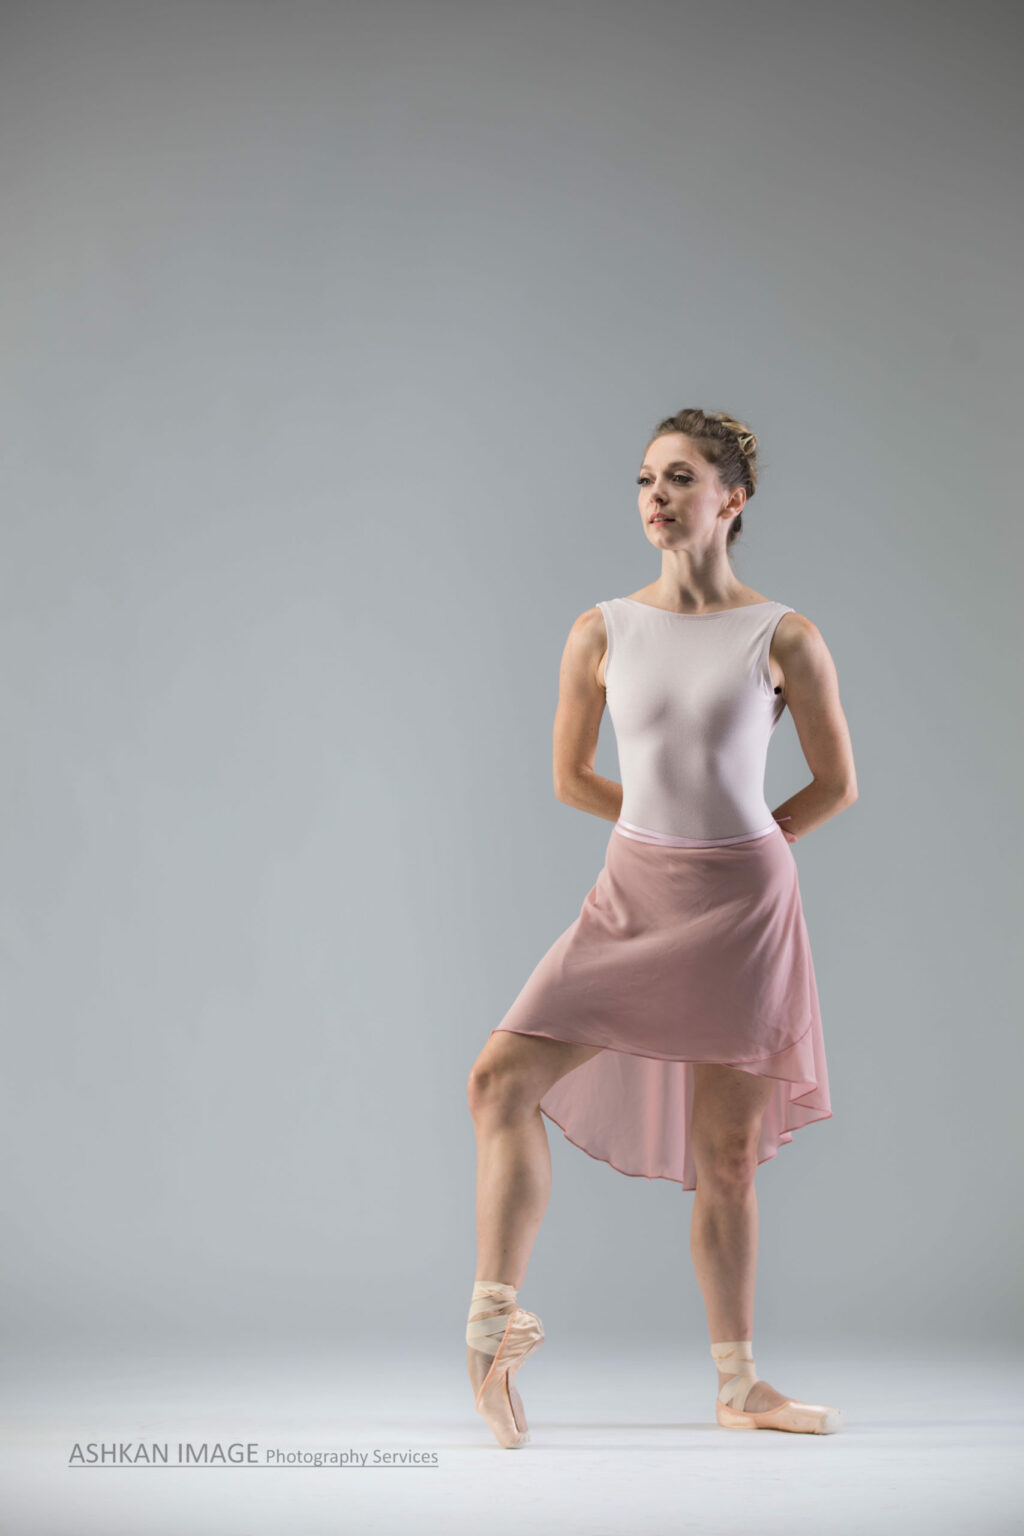 dancer poses in studio